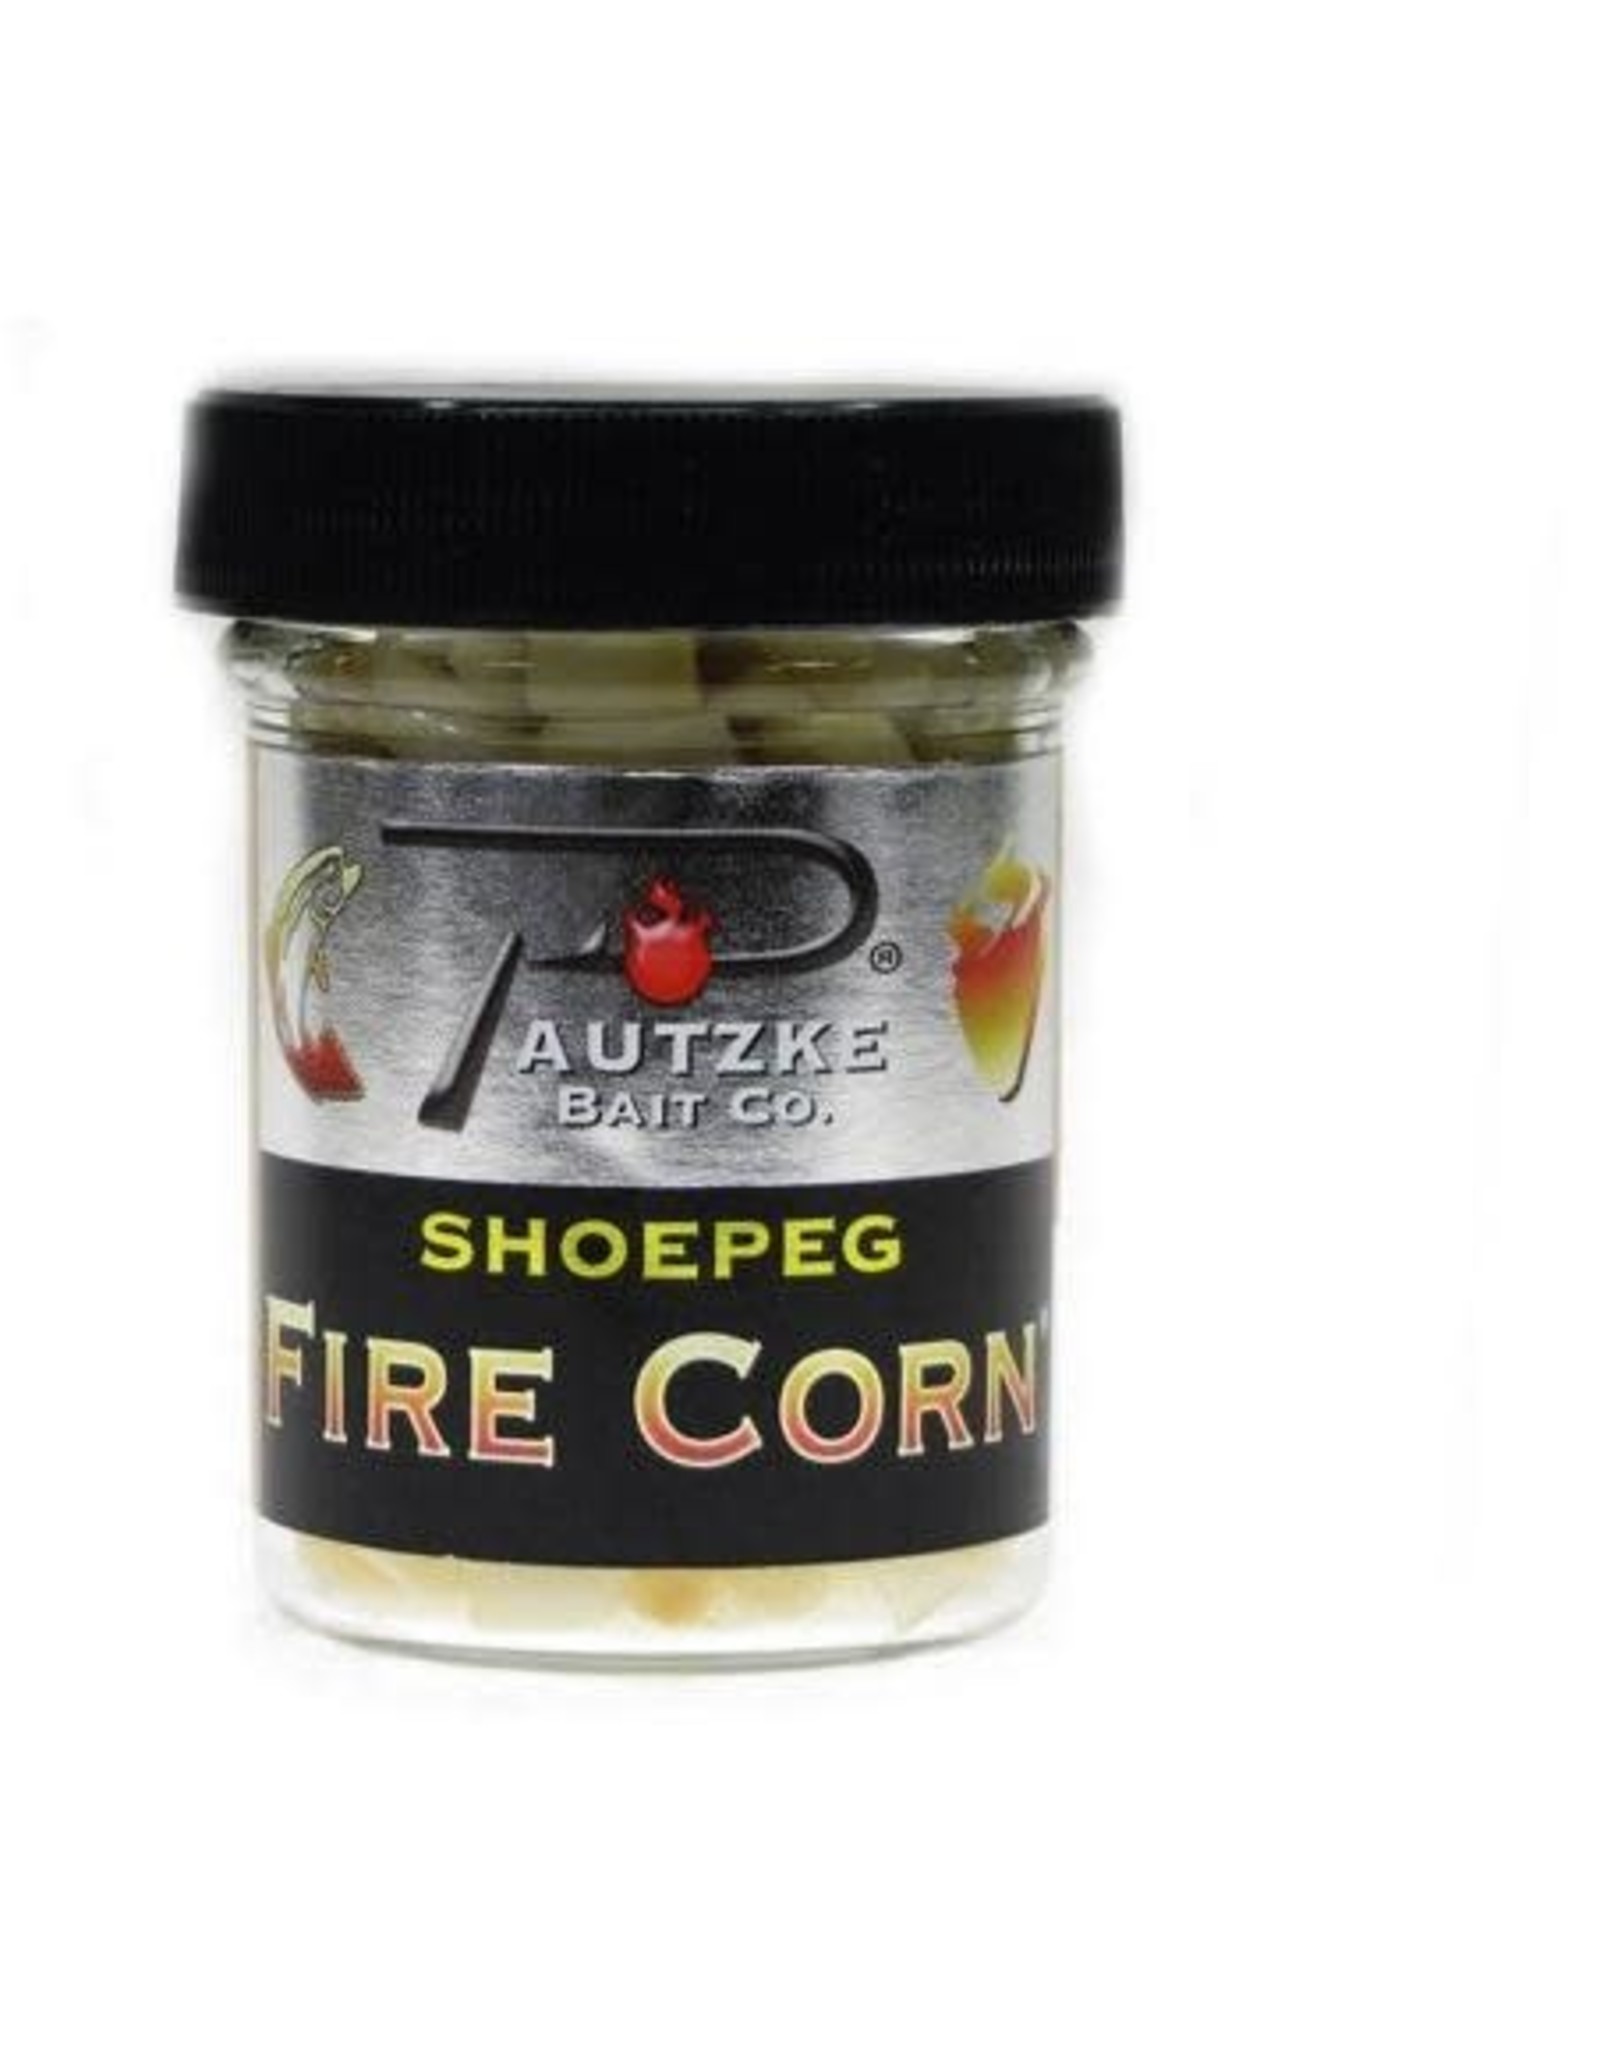 Pautzke Pautzke Fire Corn - Shoepeg - Natural Color- 1.5 Oz